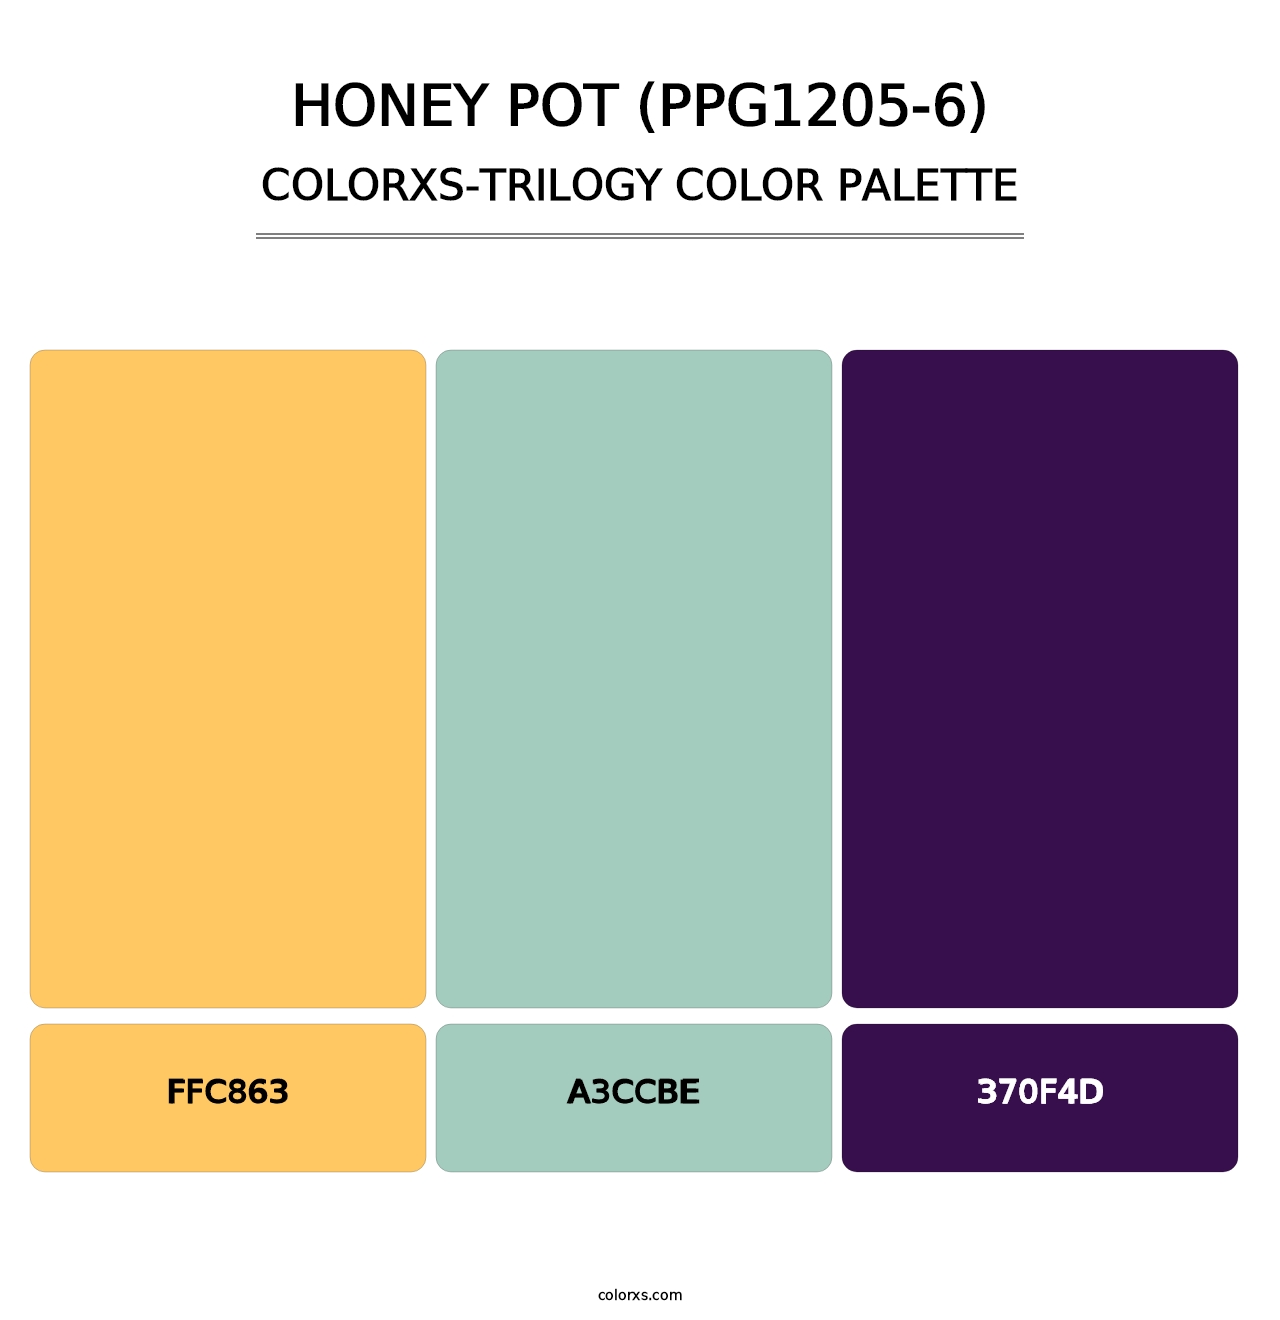 Honey Pot (PPG1205-6) - Colorxs Trilogy Palette